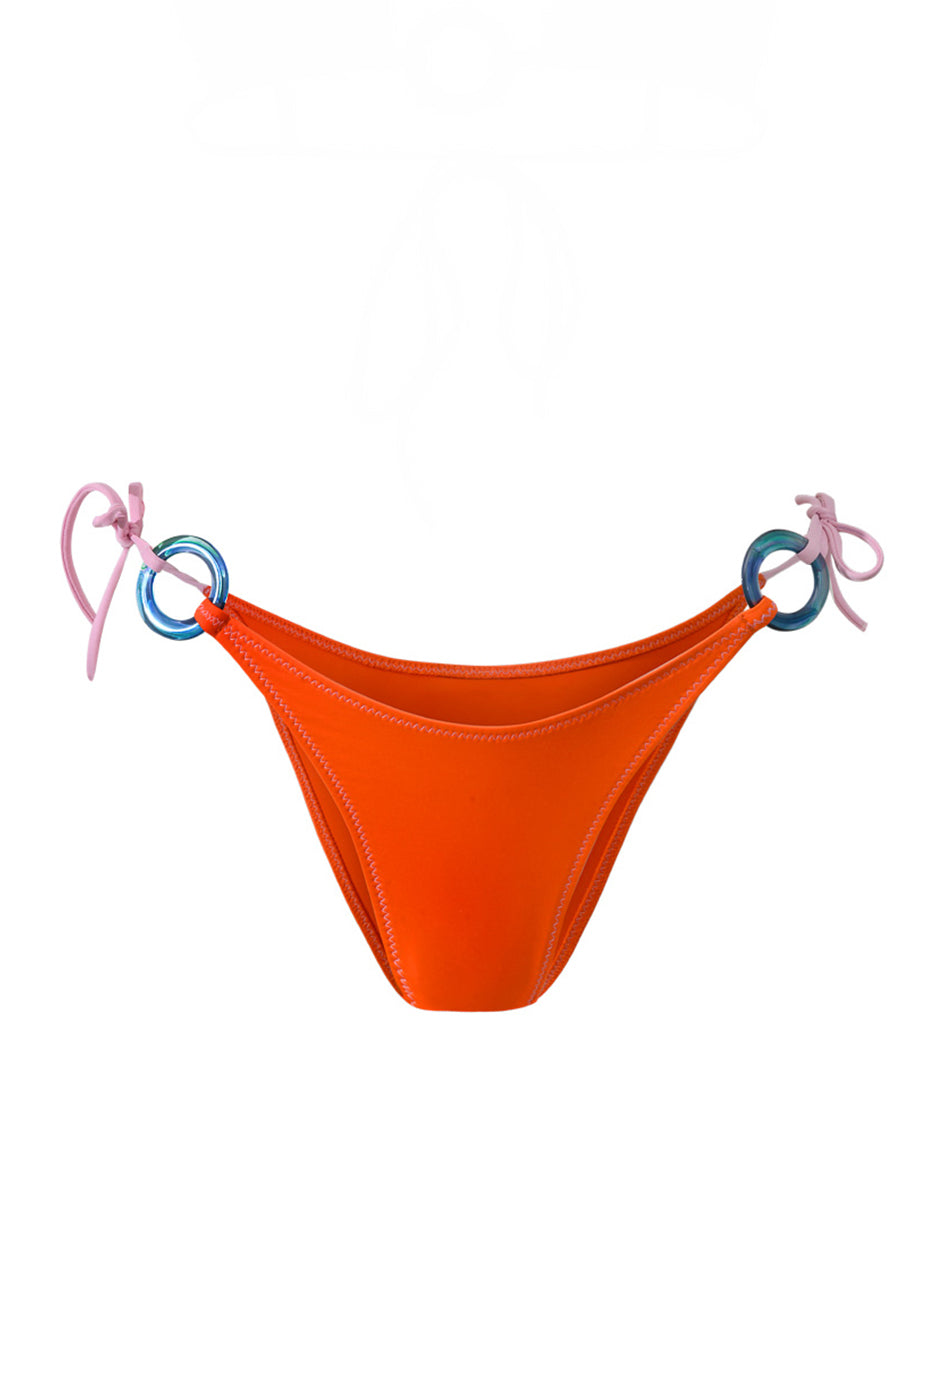 Photo détourée sur fond blanc du bas de maillot de bain Lido orange tangerine et blush, avec des anneaux bleus sur les côtés